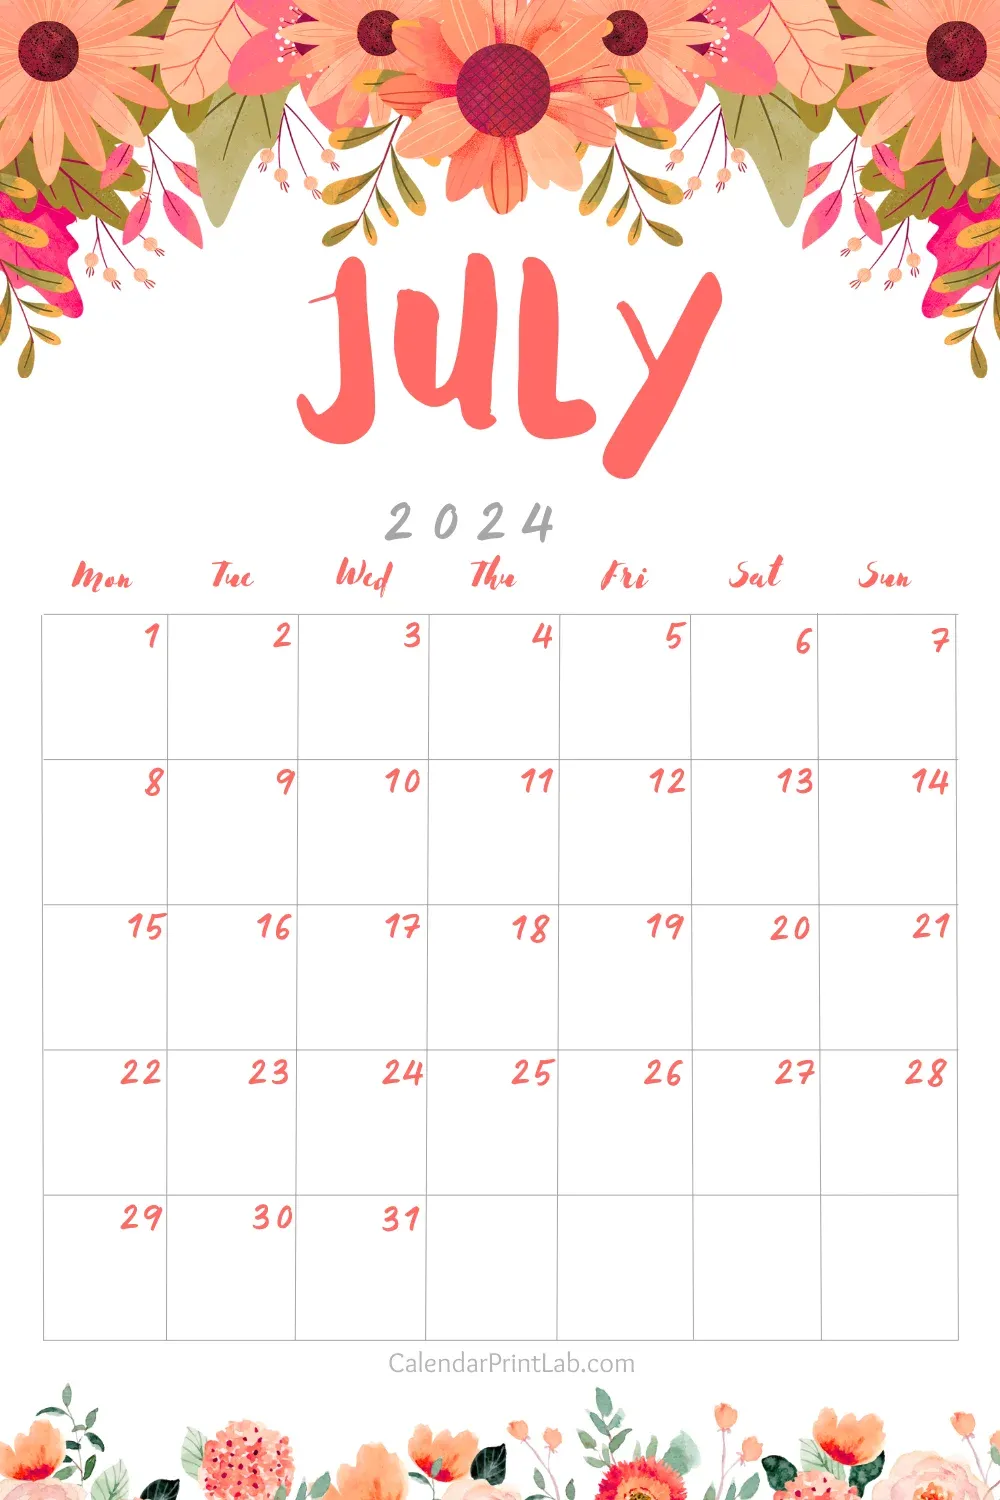 July 2024 Floral Calendar